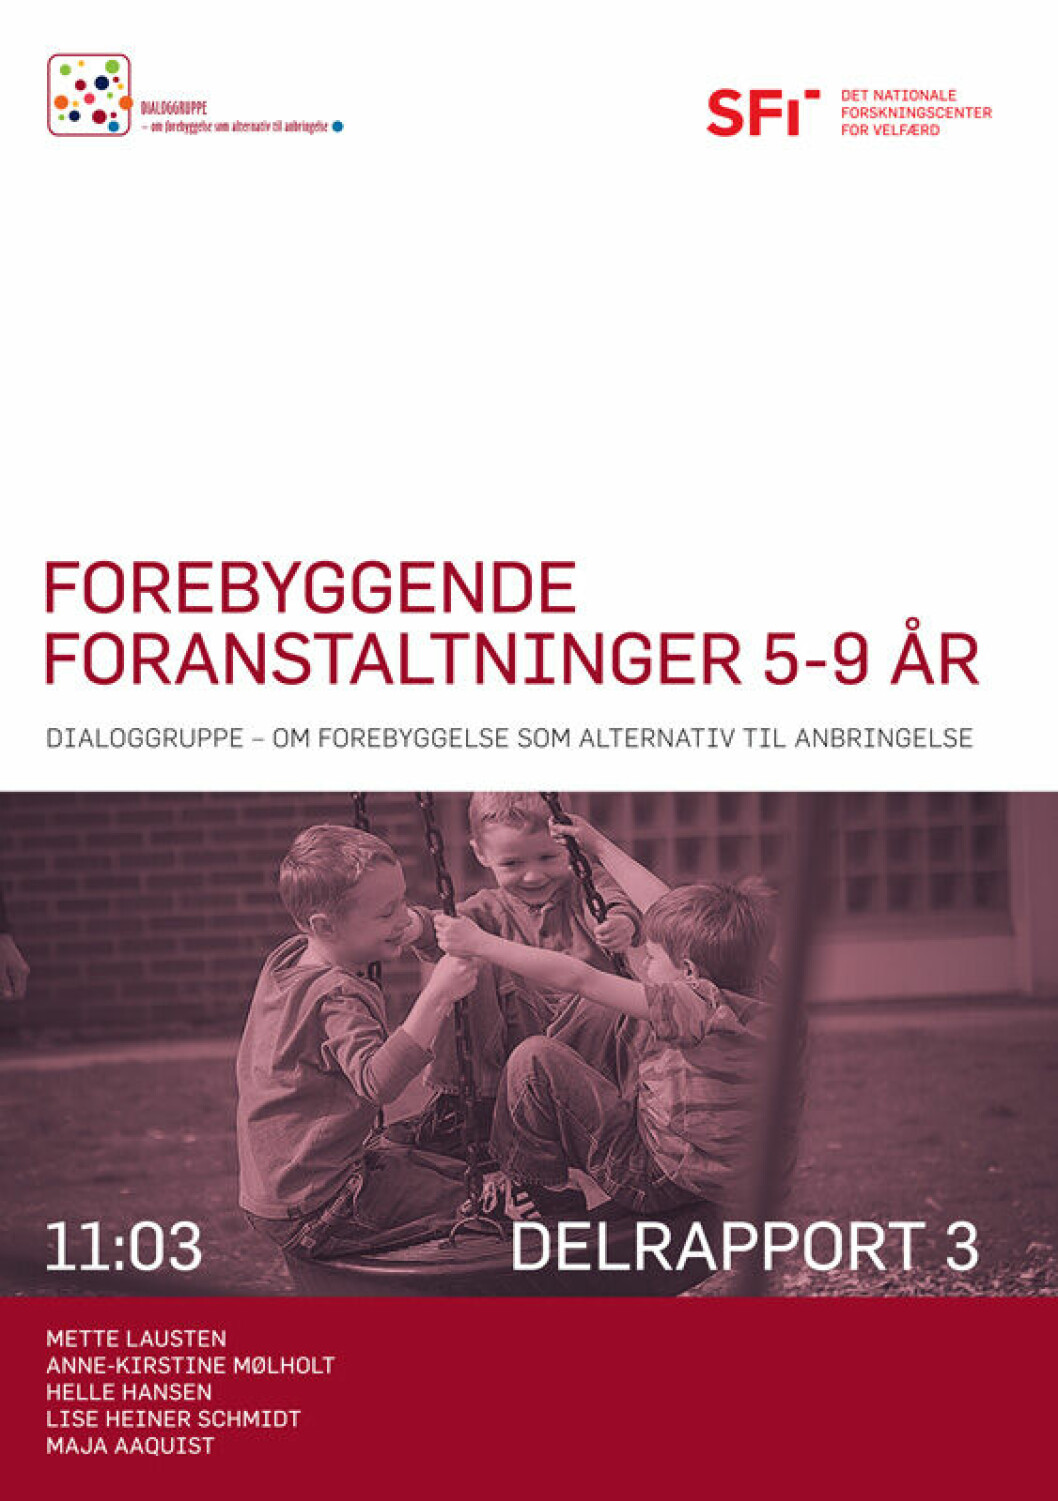 Rapporten »Forebyggende foranstaltninger 5-9 år« kan downloades fra sfi.dk